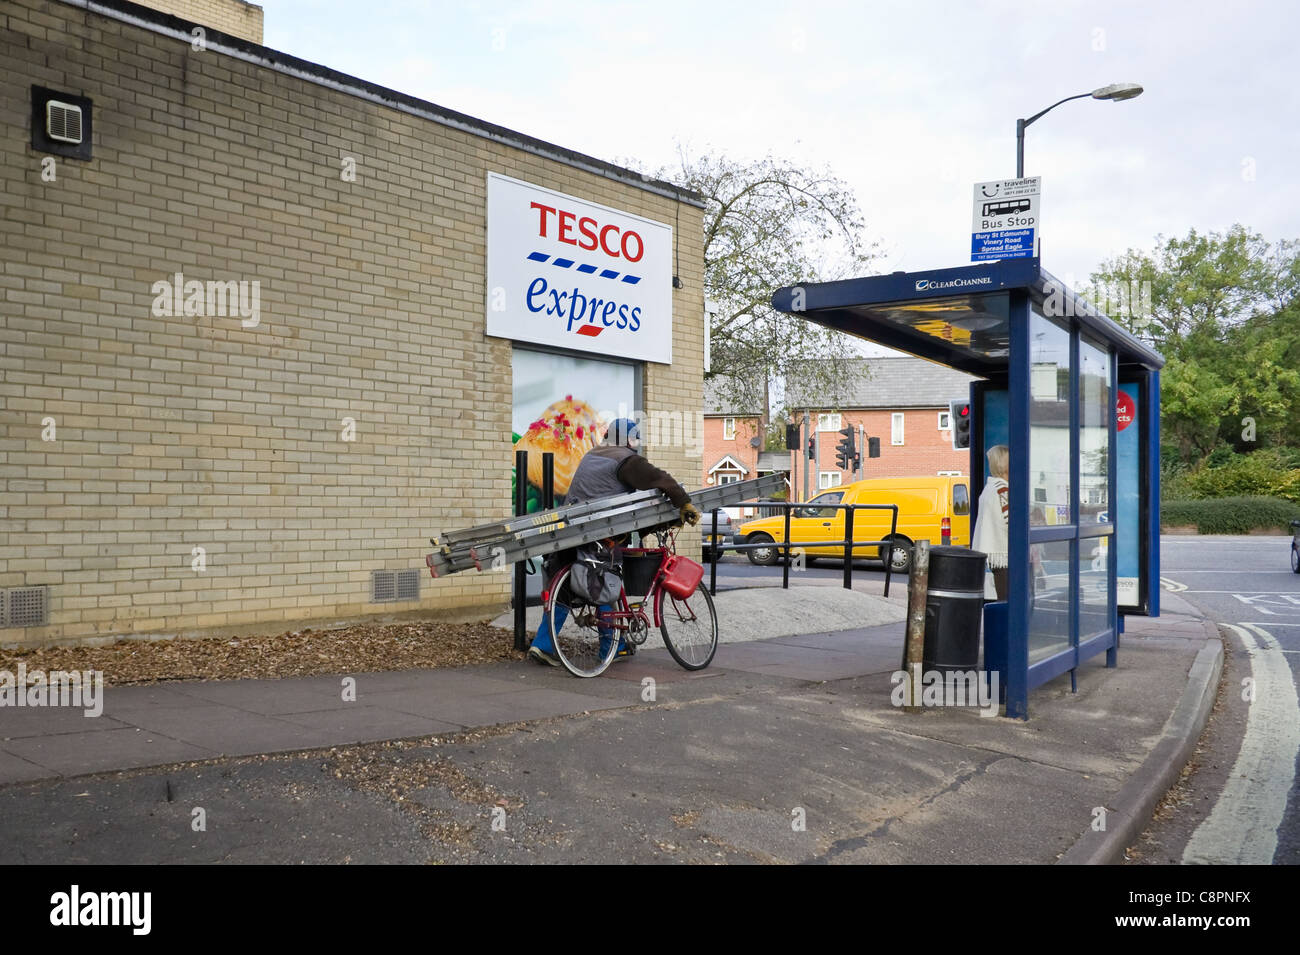 Un vieil homme pousse une échelle sur un vélo au-delà d'un magasin Tesco express, Bury St Edmunds, 2011 Banque D'Images